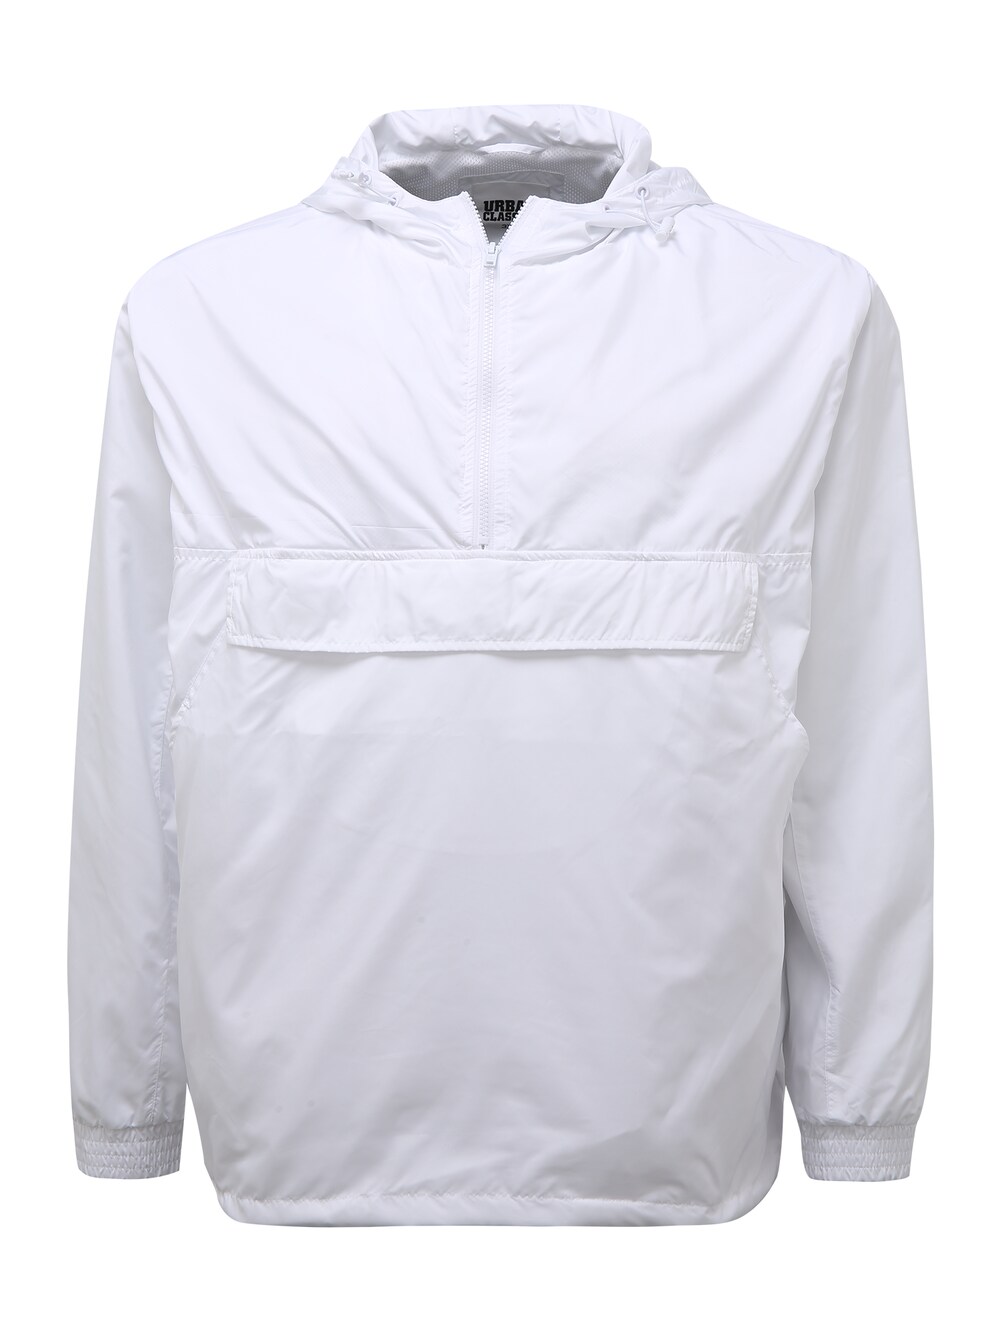 Межсезонная куртка Urban Classics, белый